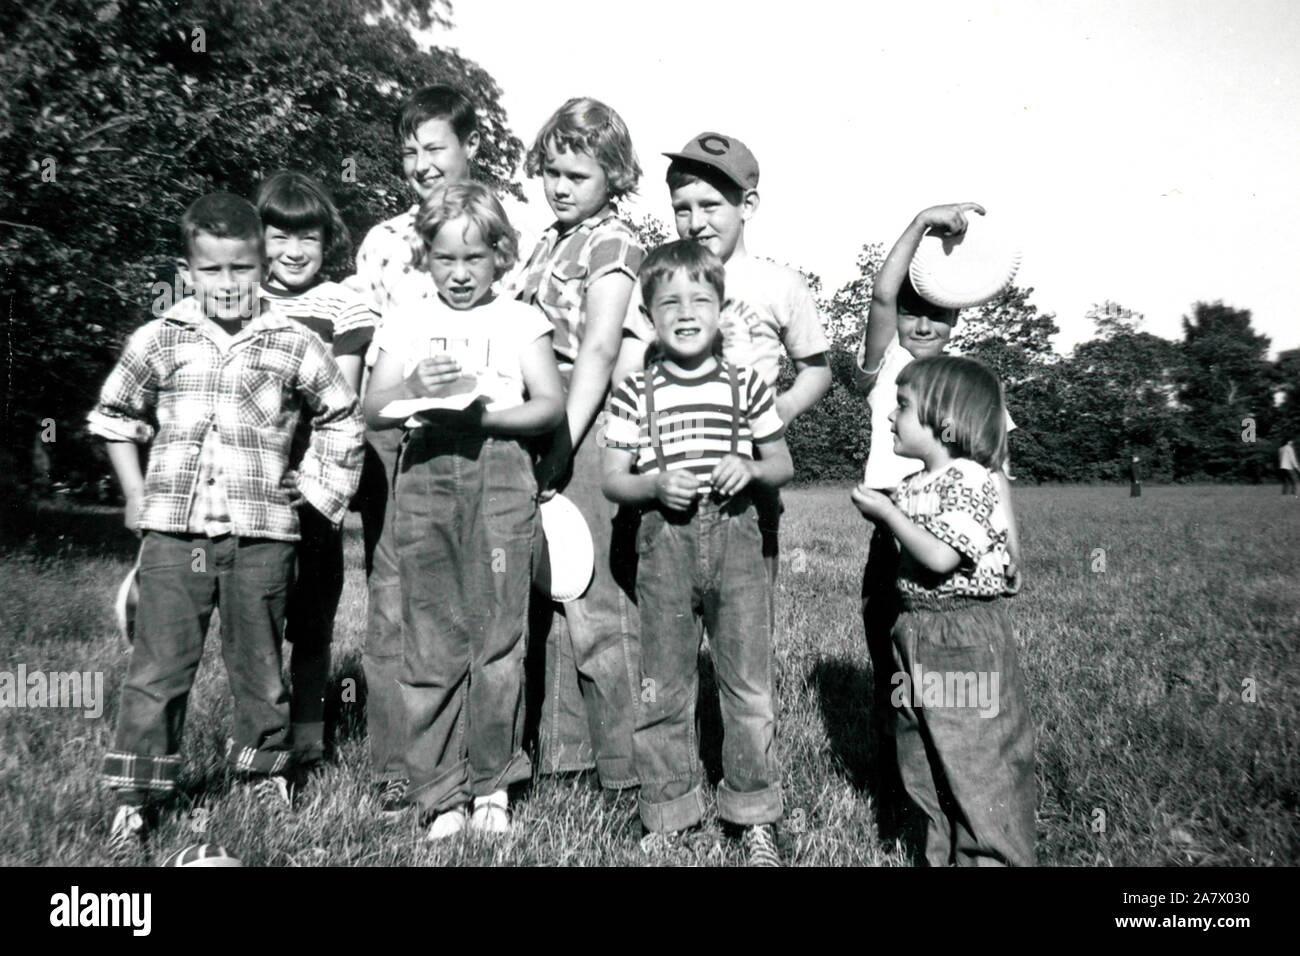 Los Baby Boomers estadounidenses jóvenes crecen en los suburbios de Chicago, en los primeros años del decenio de 1950. Foto de stock